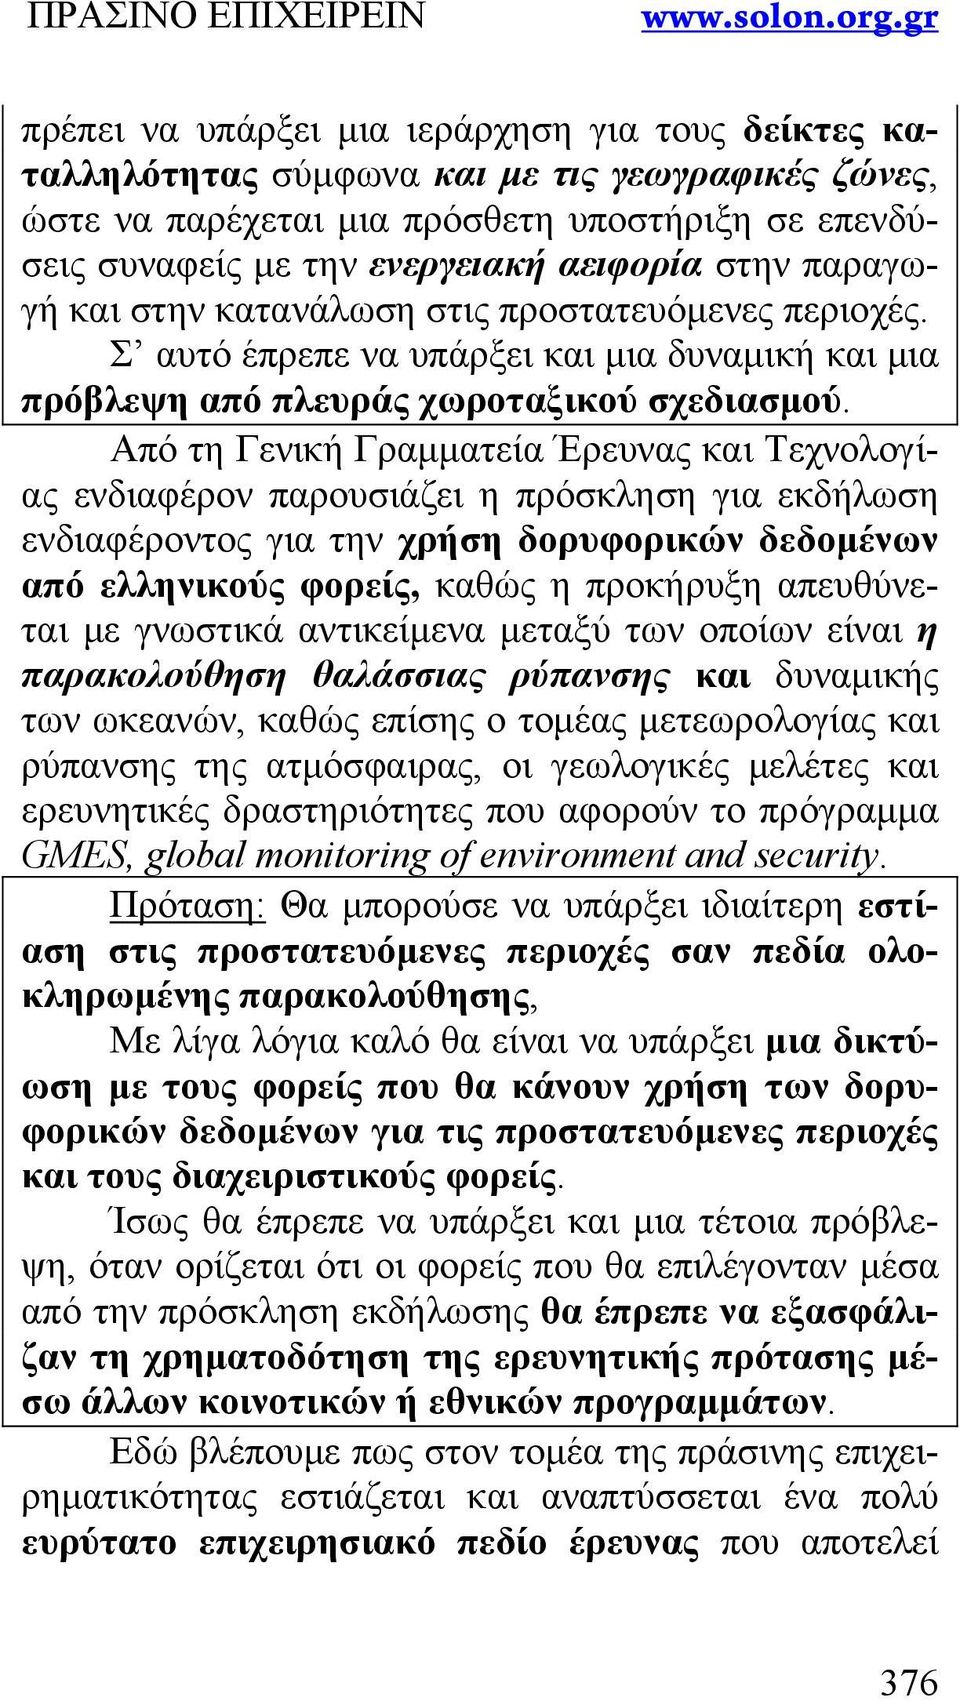 Από τη Γενική Γραμματεία Έρευνας και Τεχνολογίας ενδιαφέρον παρουσιάζει η πρόσκληση για εκδήλωση ενδιαφέροντος για την χρήση δορυφορικών δεδομένων από ελληνικούς φορείς, καθώς η προκήρυξη απευθύνεται